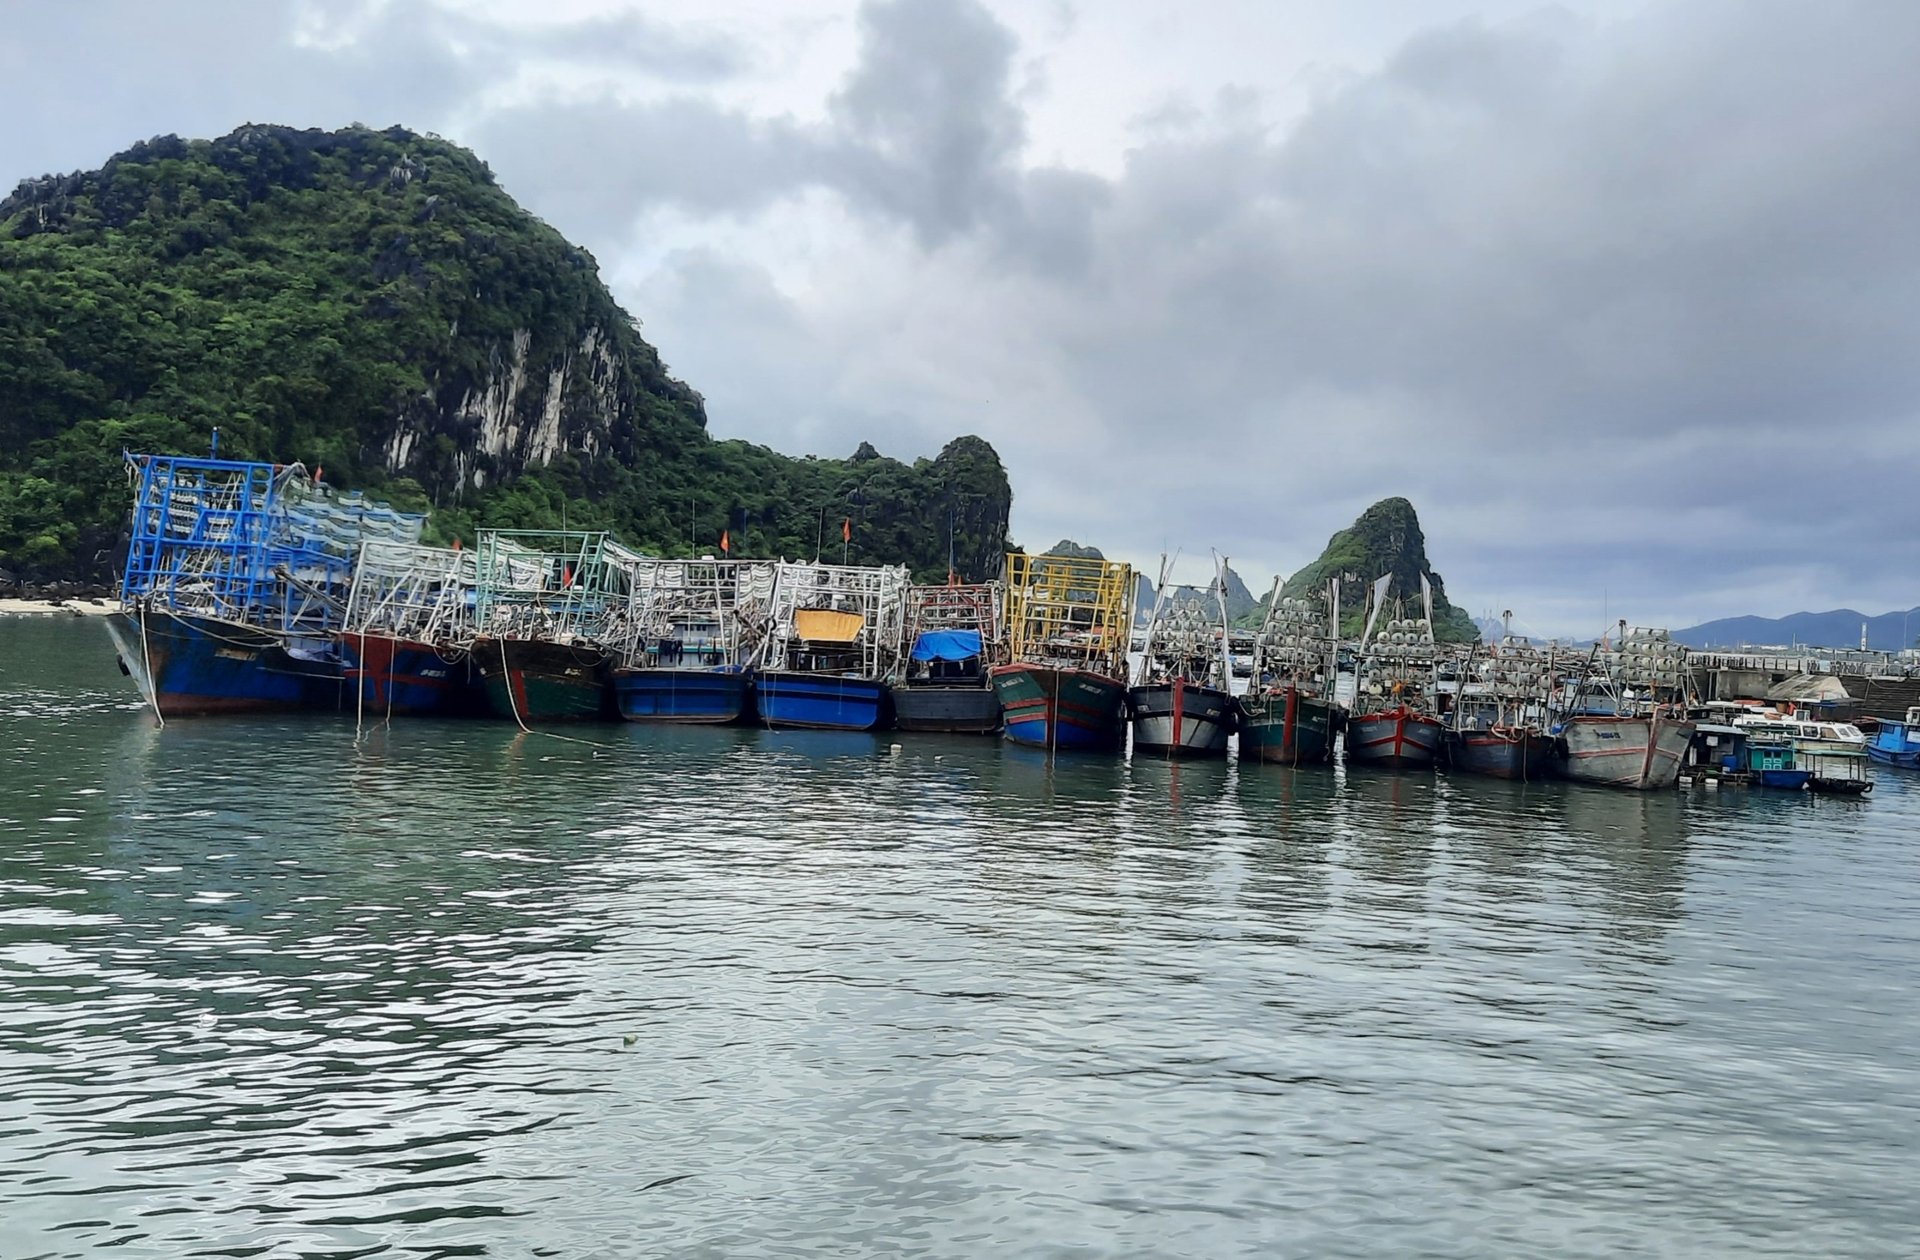 Tỉnh Quảng Ninh cần siết chặt quản lý đội tàu khai thác. Ảnh: Nguyễn Thành.